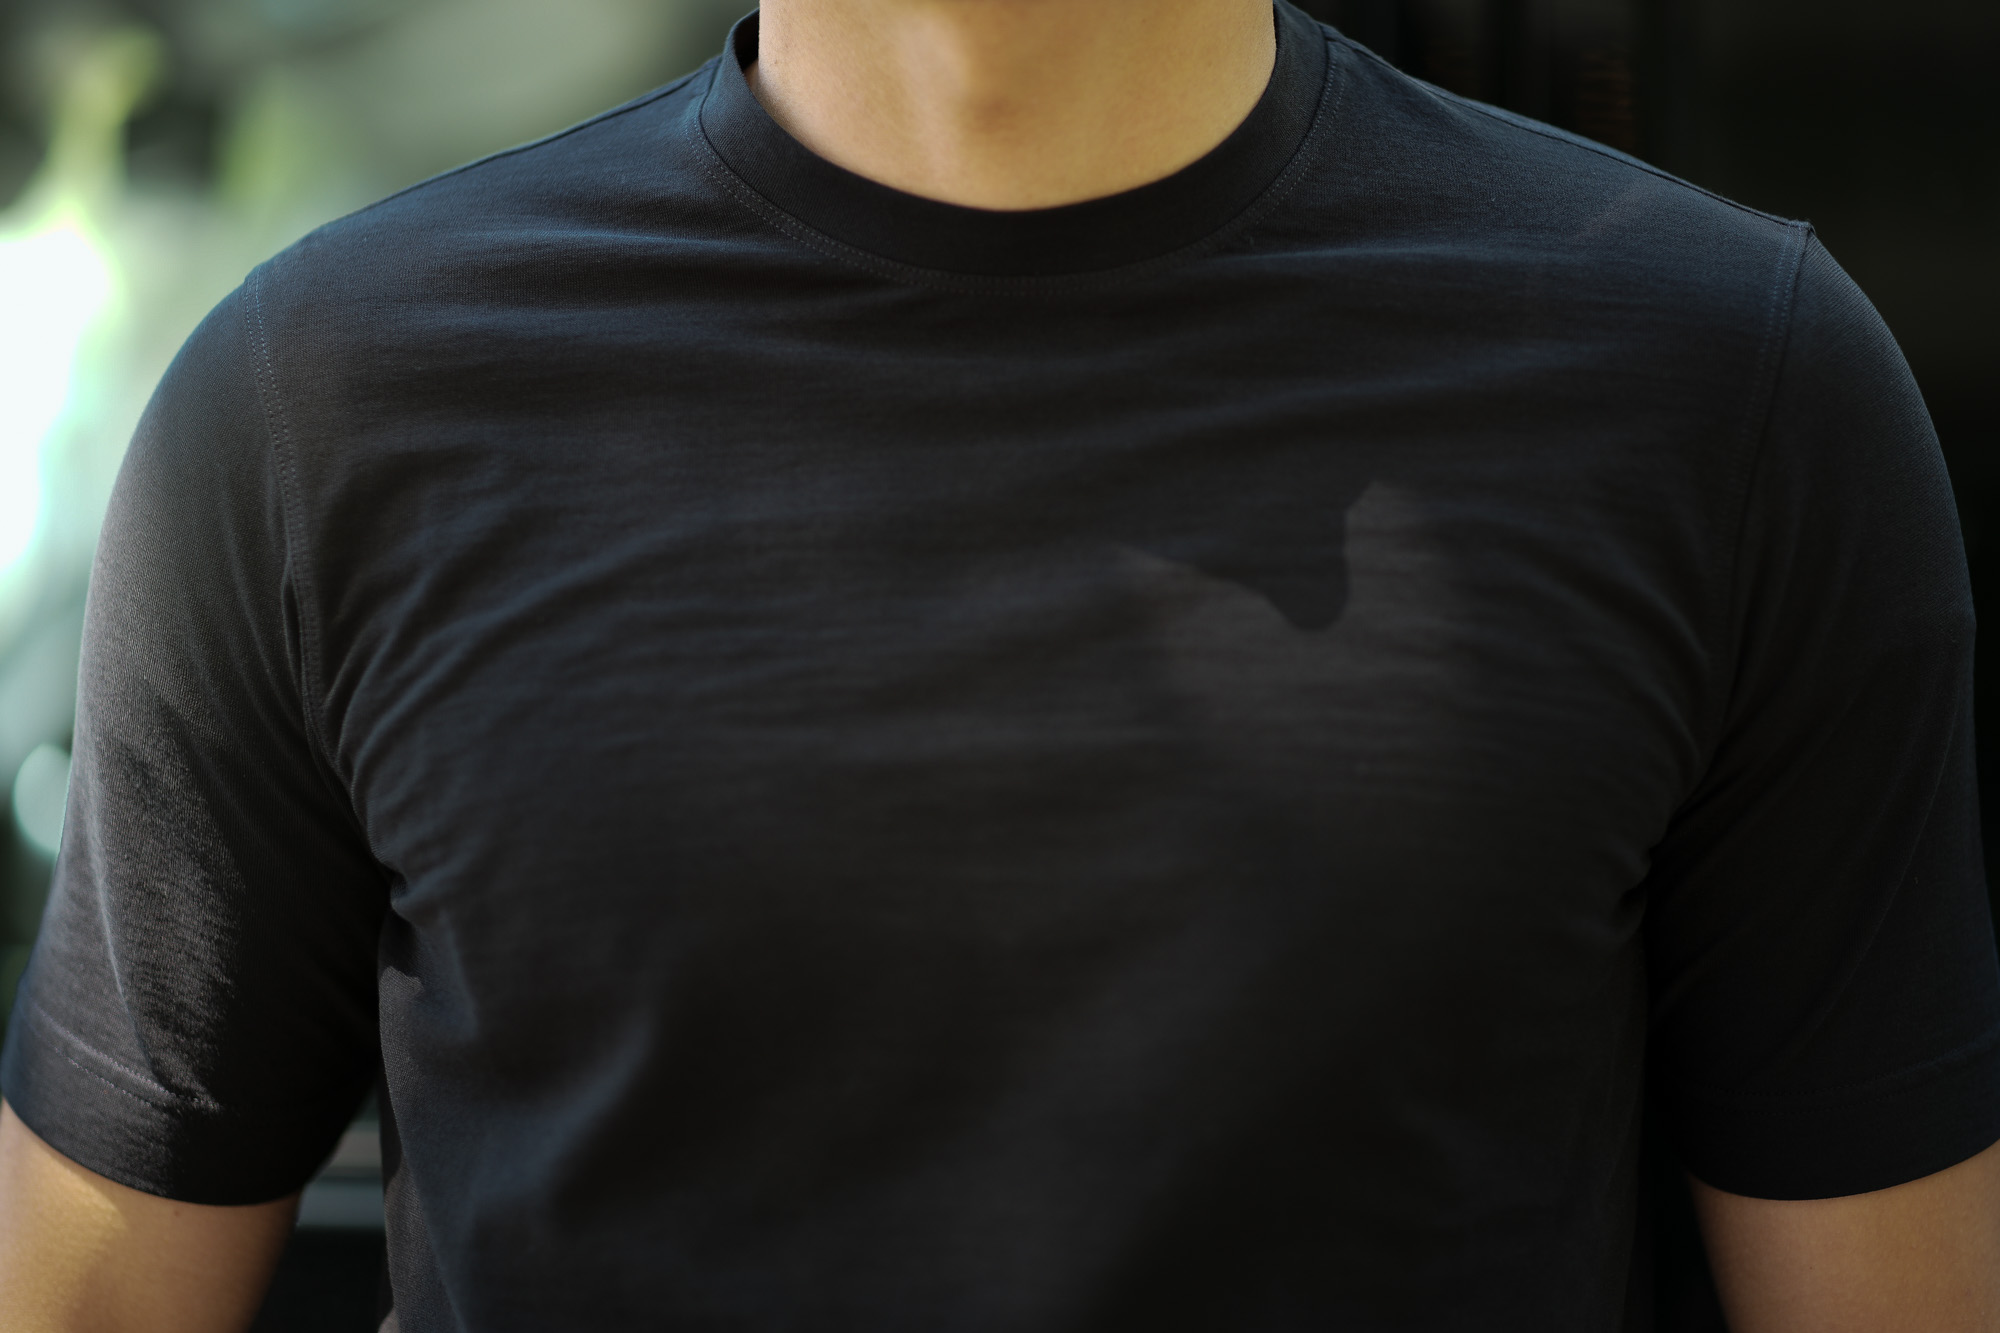 ZANONE (ザノーネ) Crew Neck T-shirt (クルーネックTシャツ) ice cotton アイスコットン Tシャツ BLACK (ブラック・Z0015) MADE IN ITALY(イタリア製) 2019 春夏新作  愛知 名古屋 altoediritto アルトエデリット